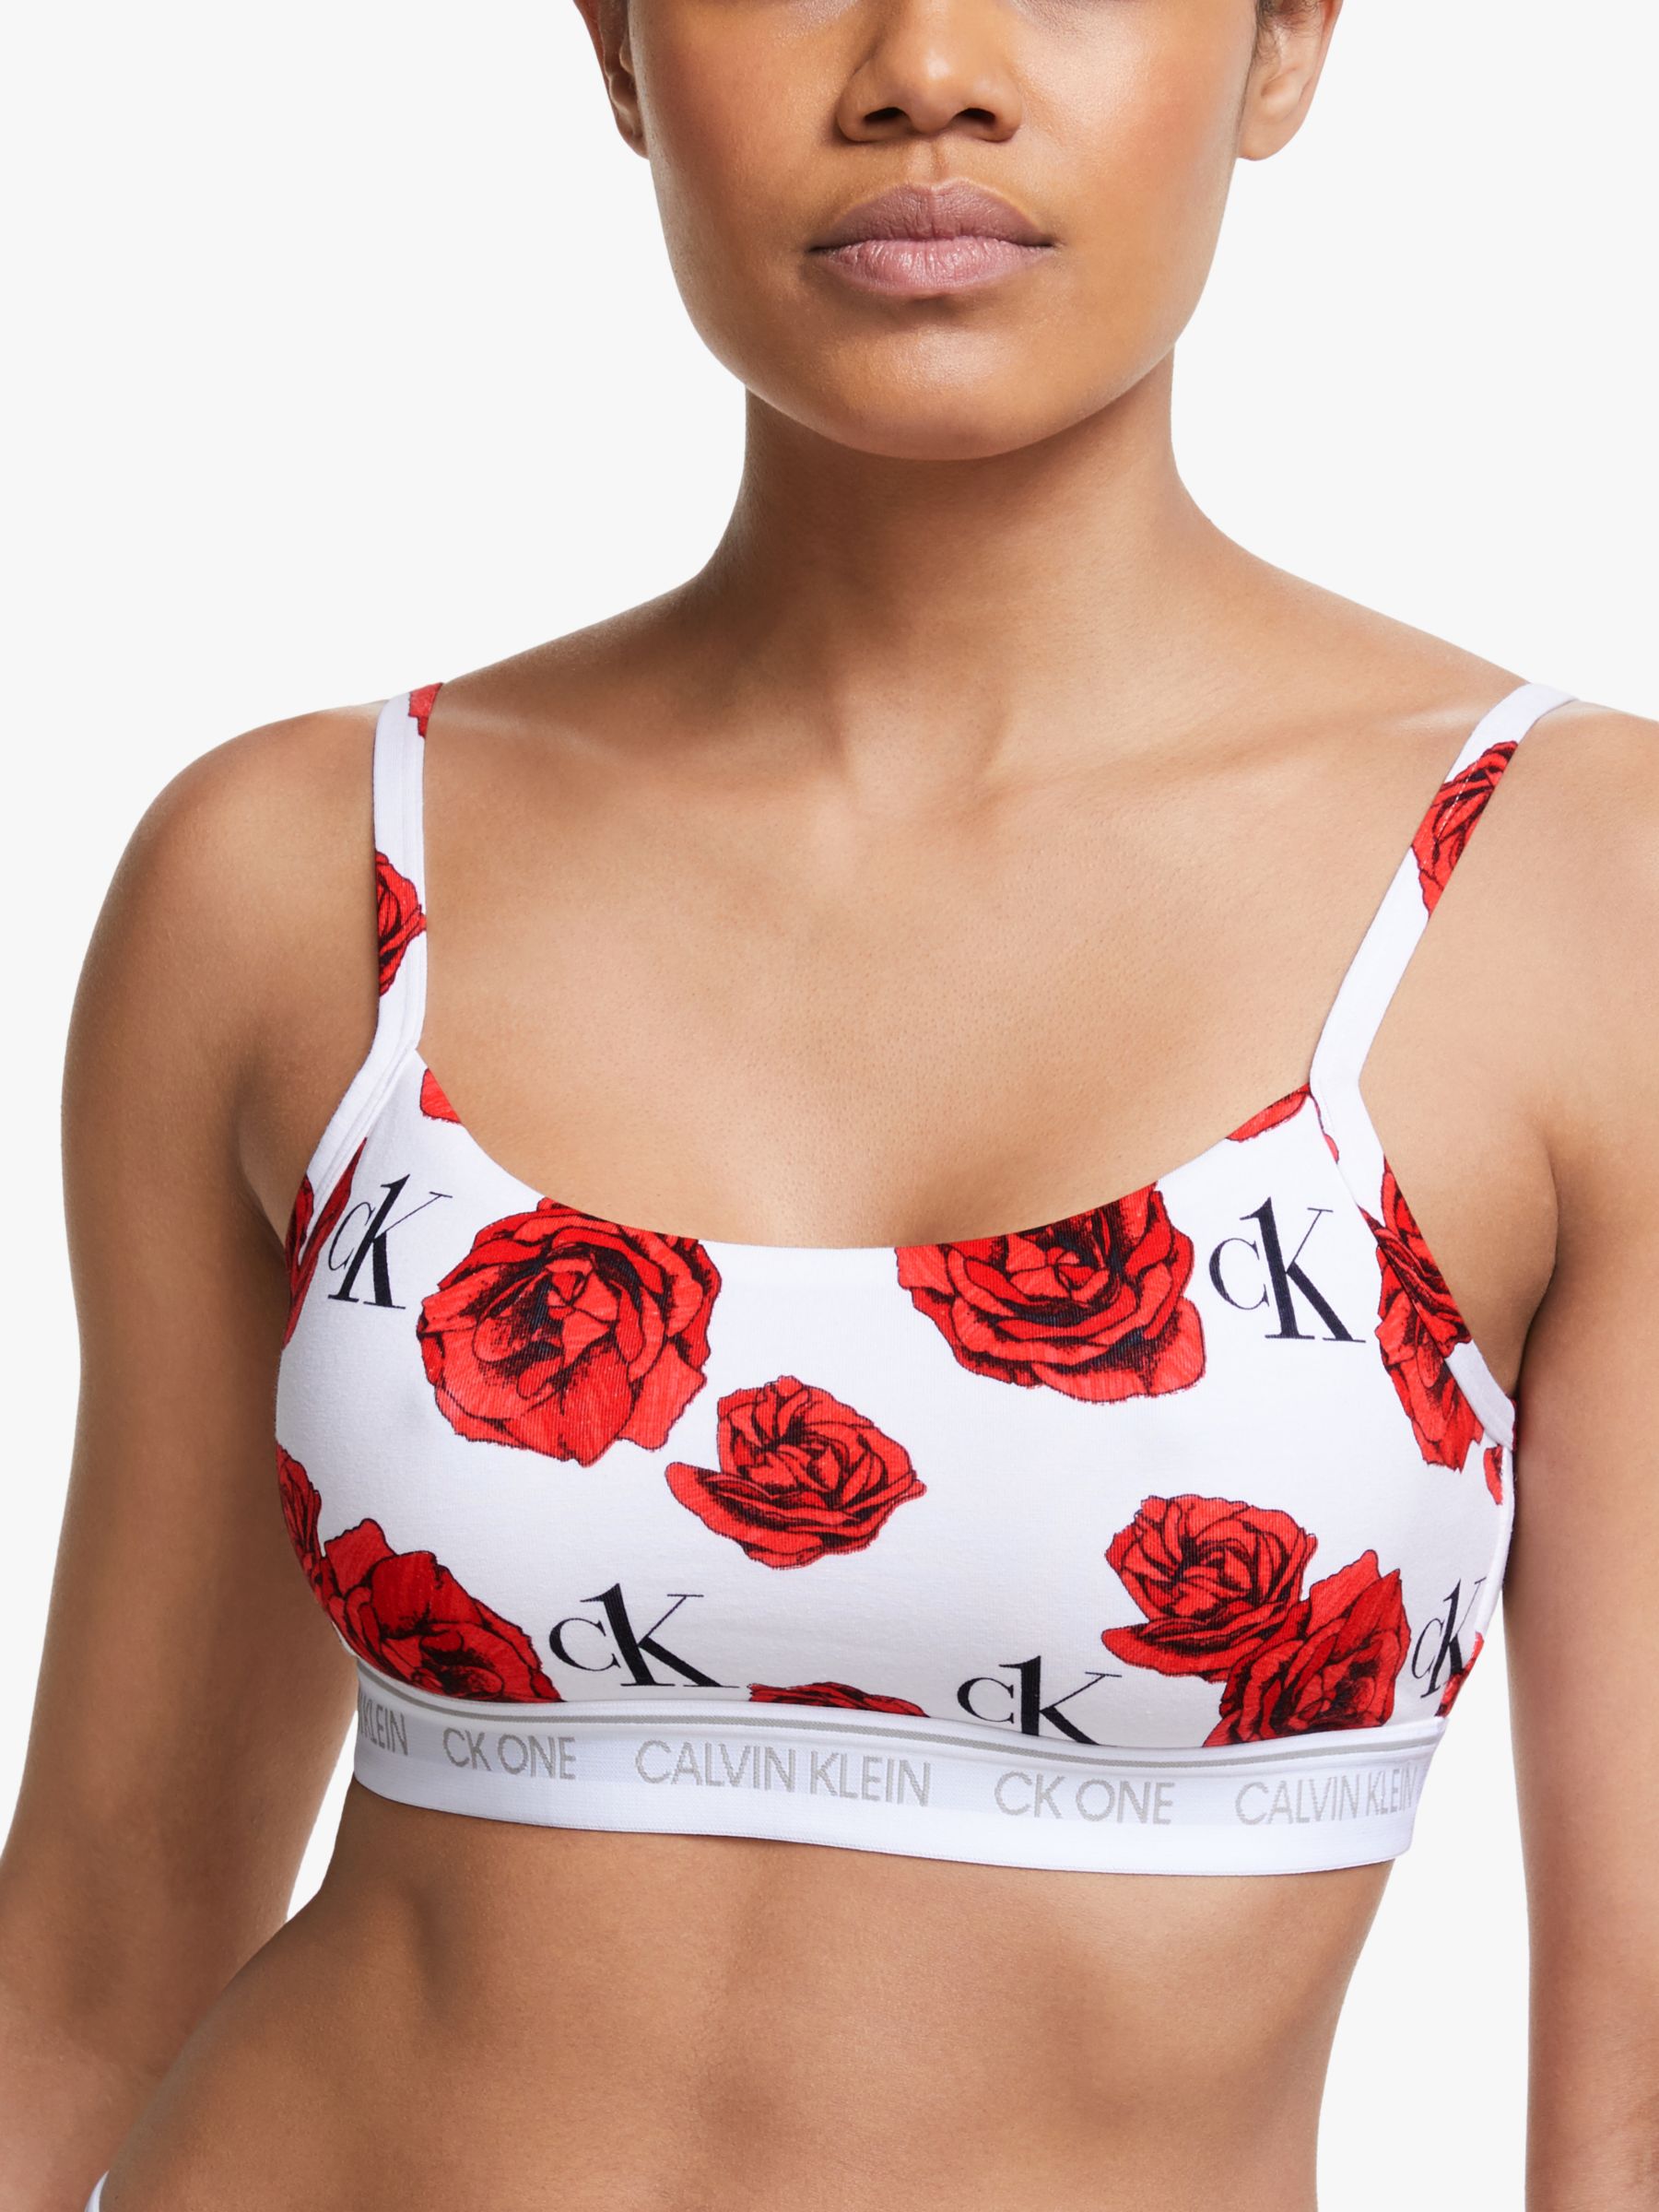 Calvin Klein Underwear CK One Bralette, Charming Roses, S